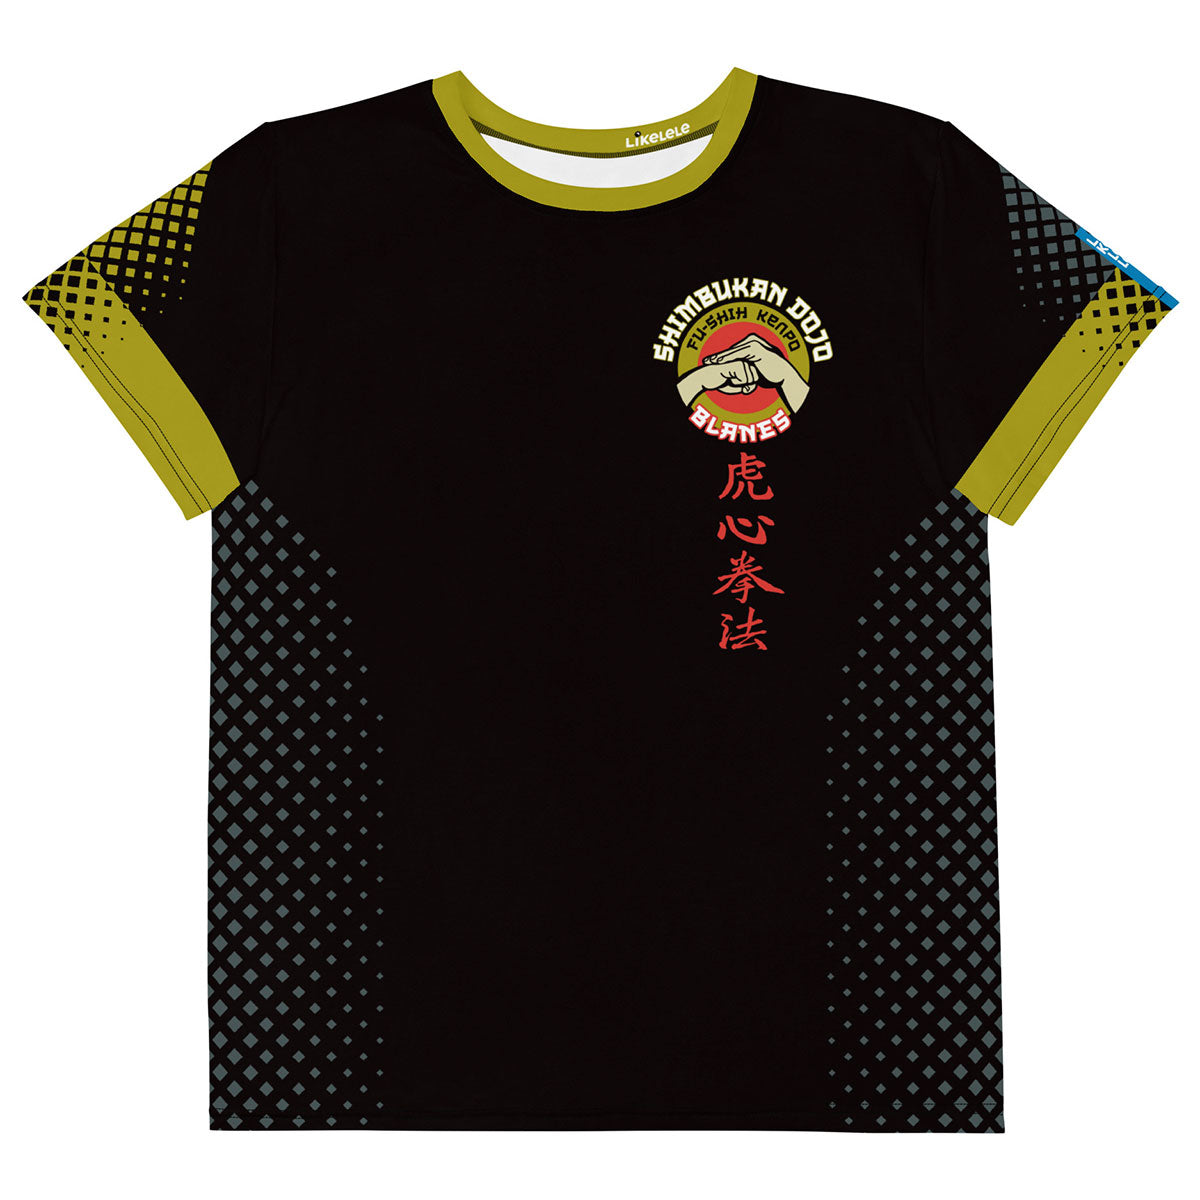 SHIMBUKAN DOJO · Camiseta m/corta·Adolescente · Premium·Full Print-287x5ipi